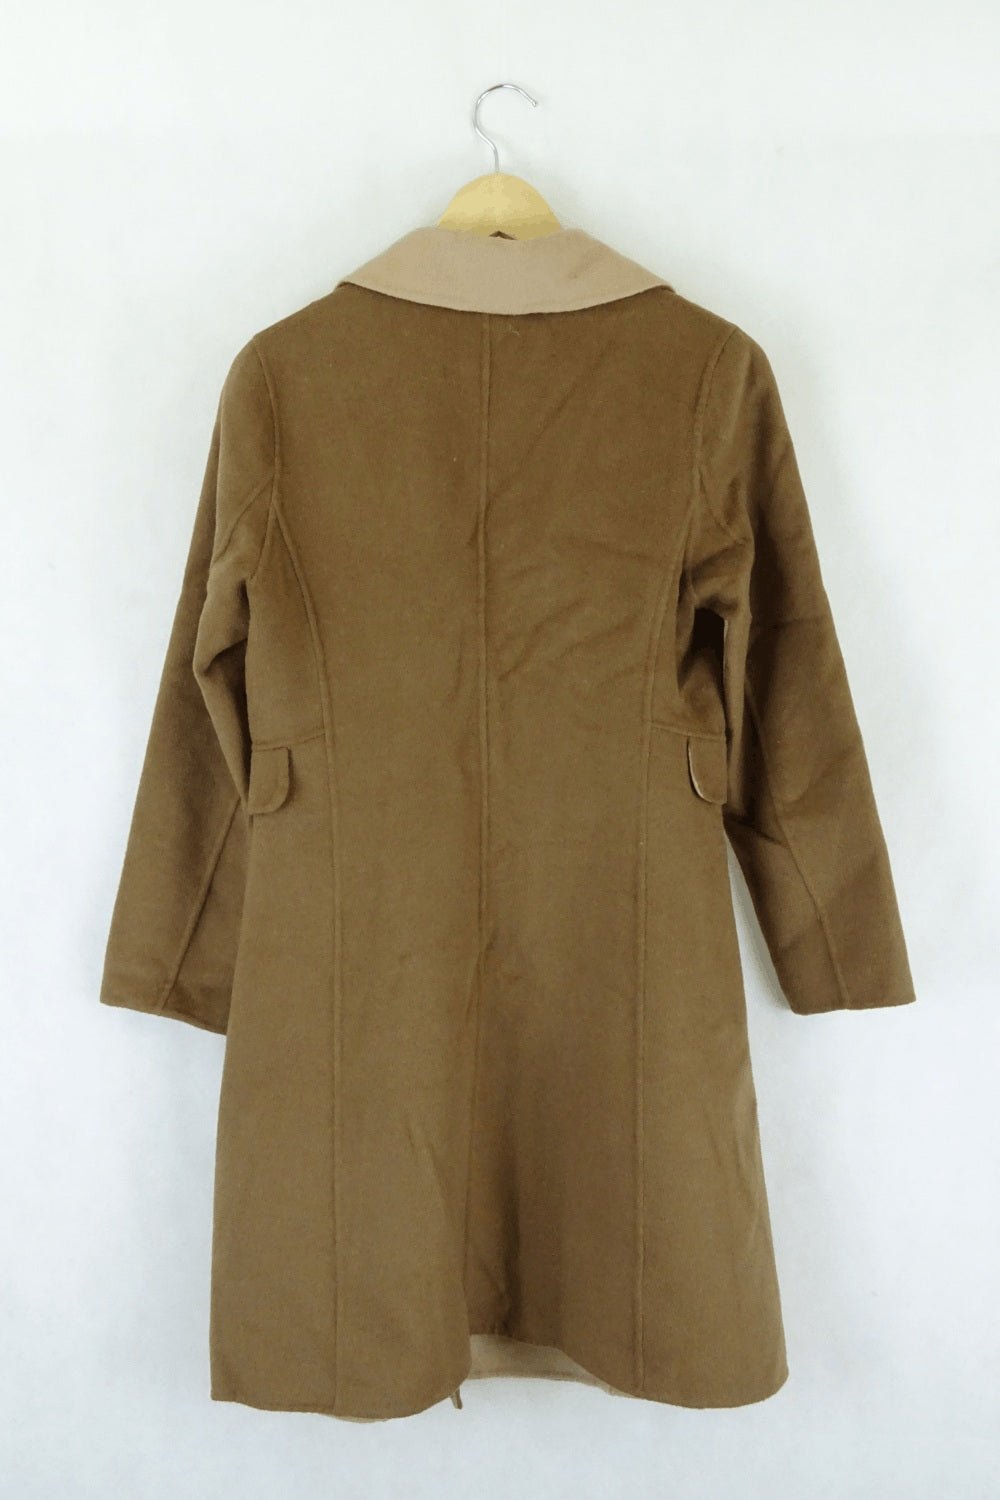 Tangren Tonal Brown Coat 38 (AU10)